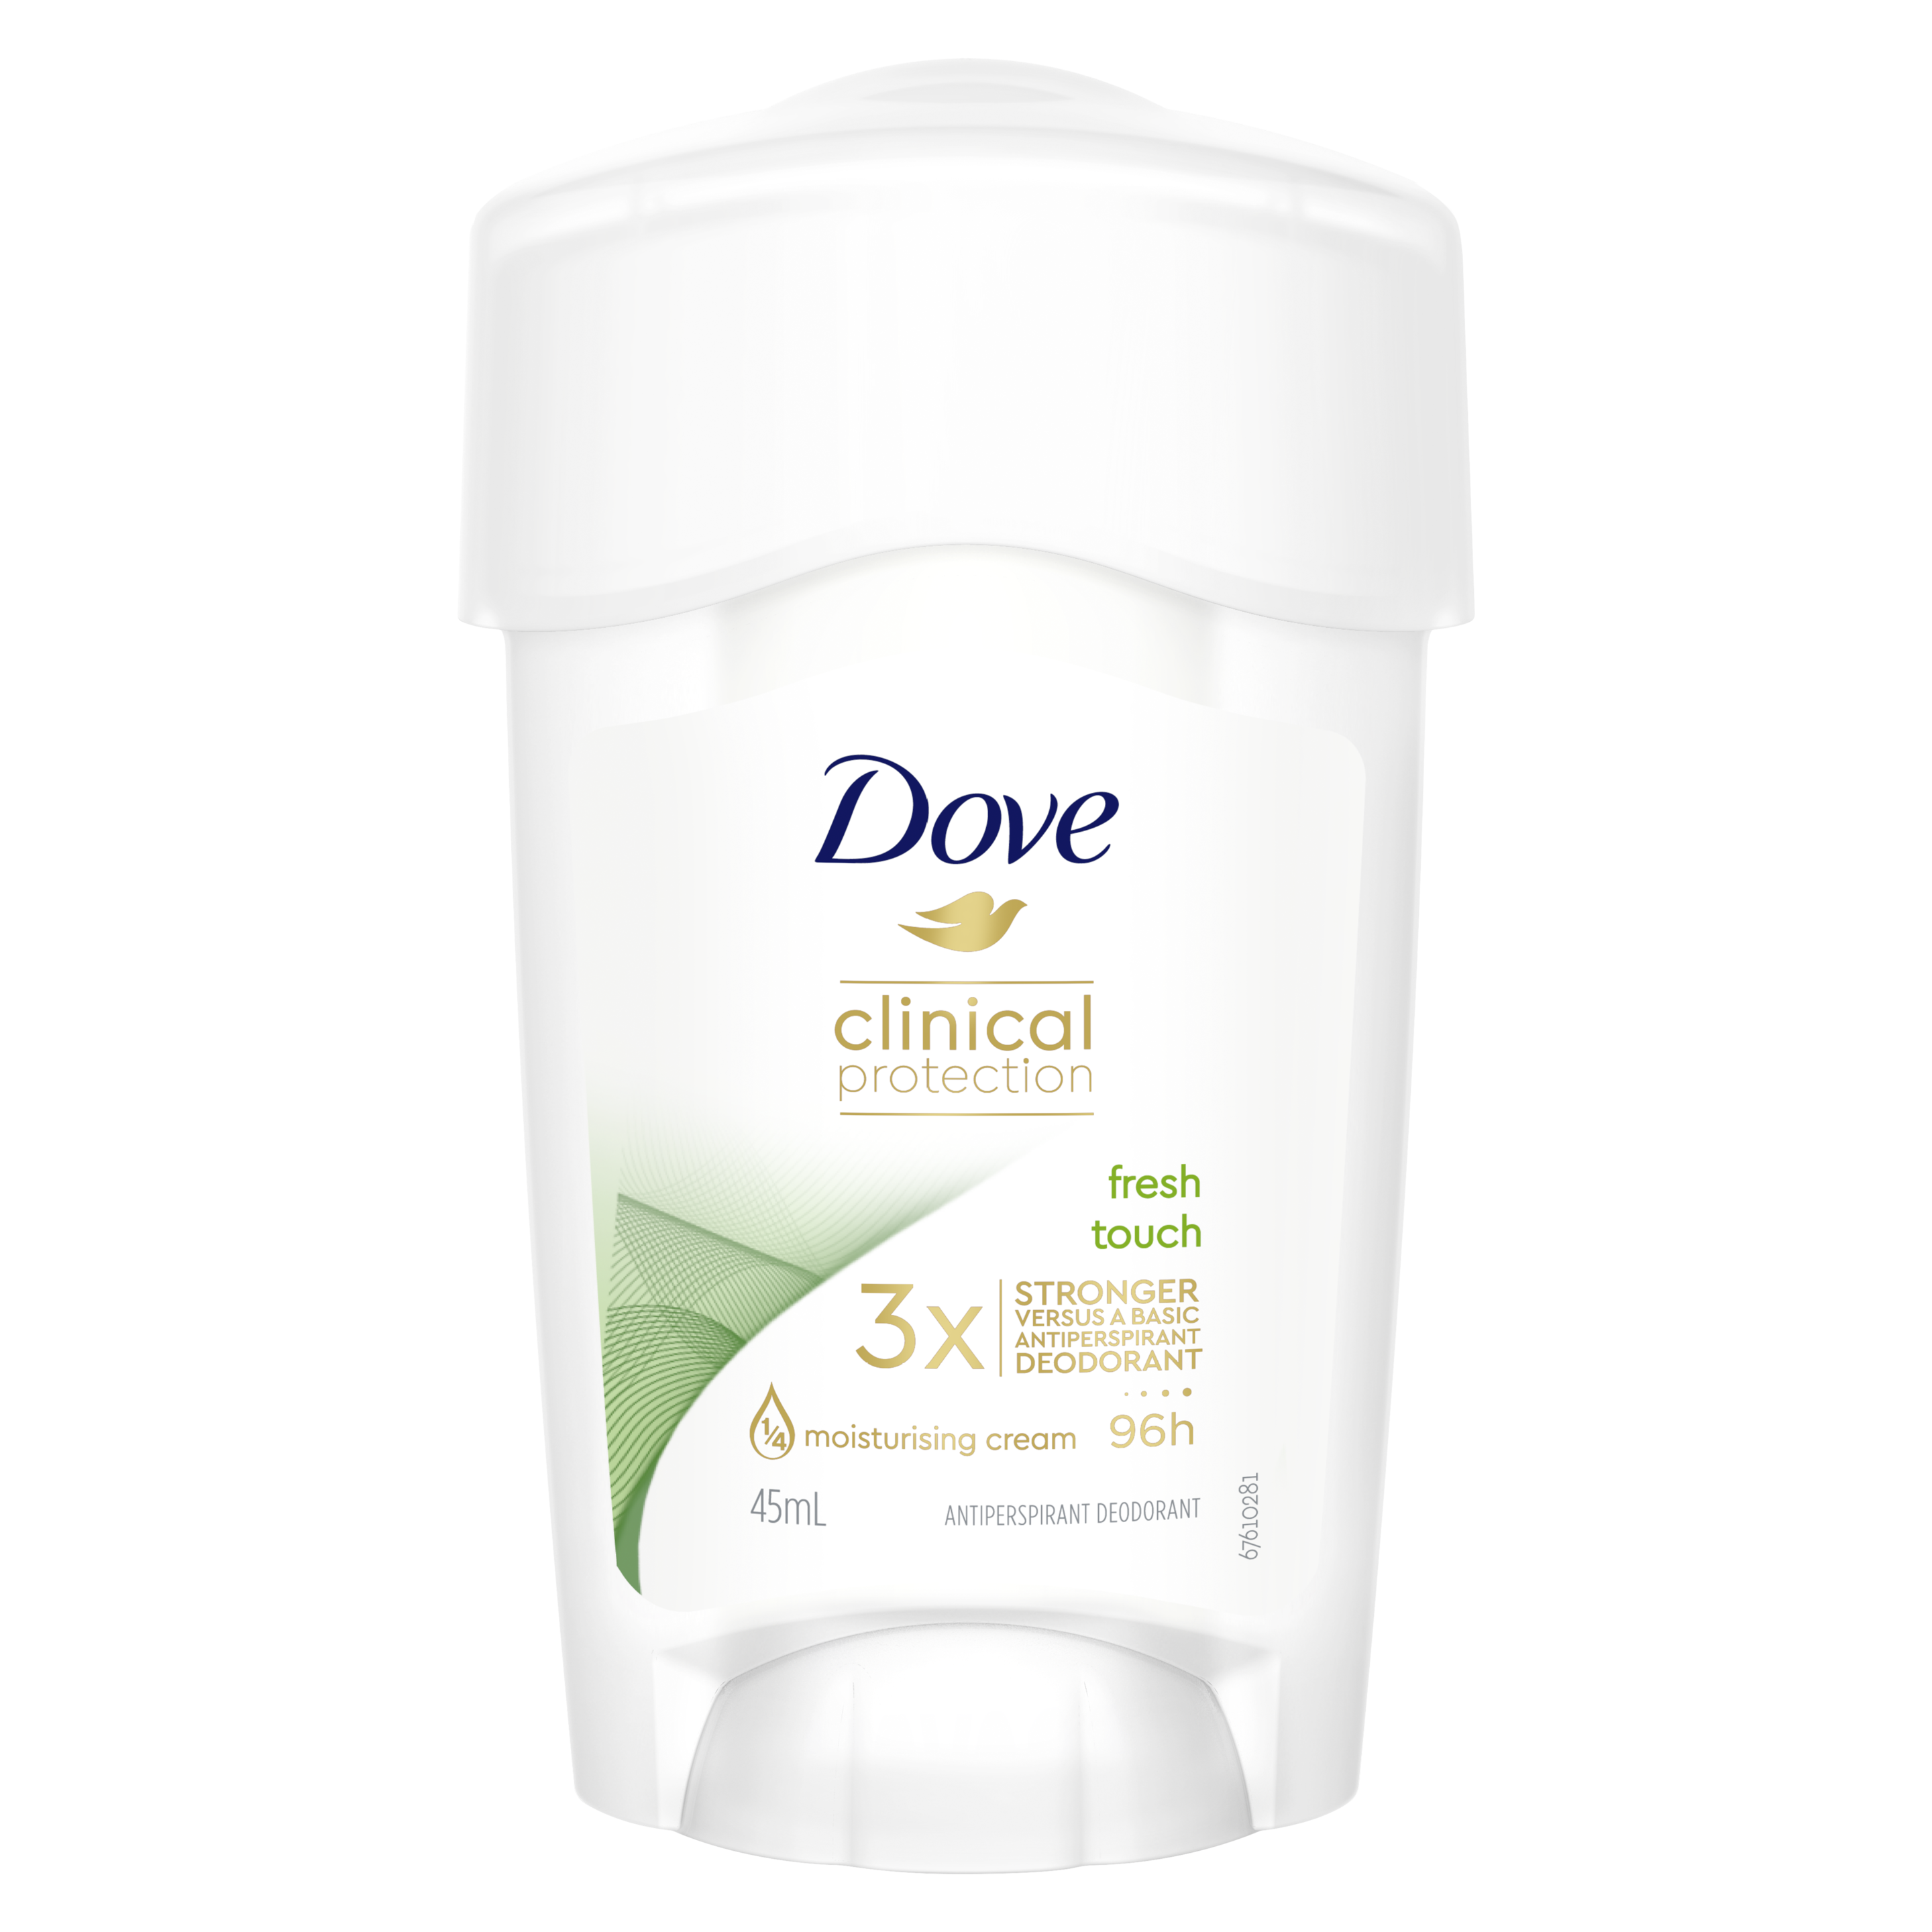 Dove Clinical Protection Go Fresh Deodorant 45ml Text